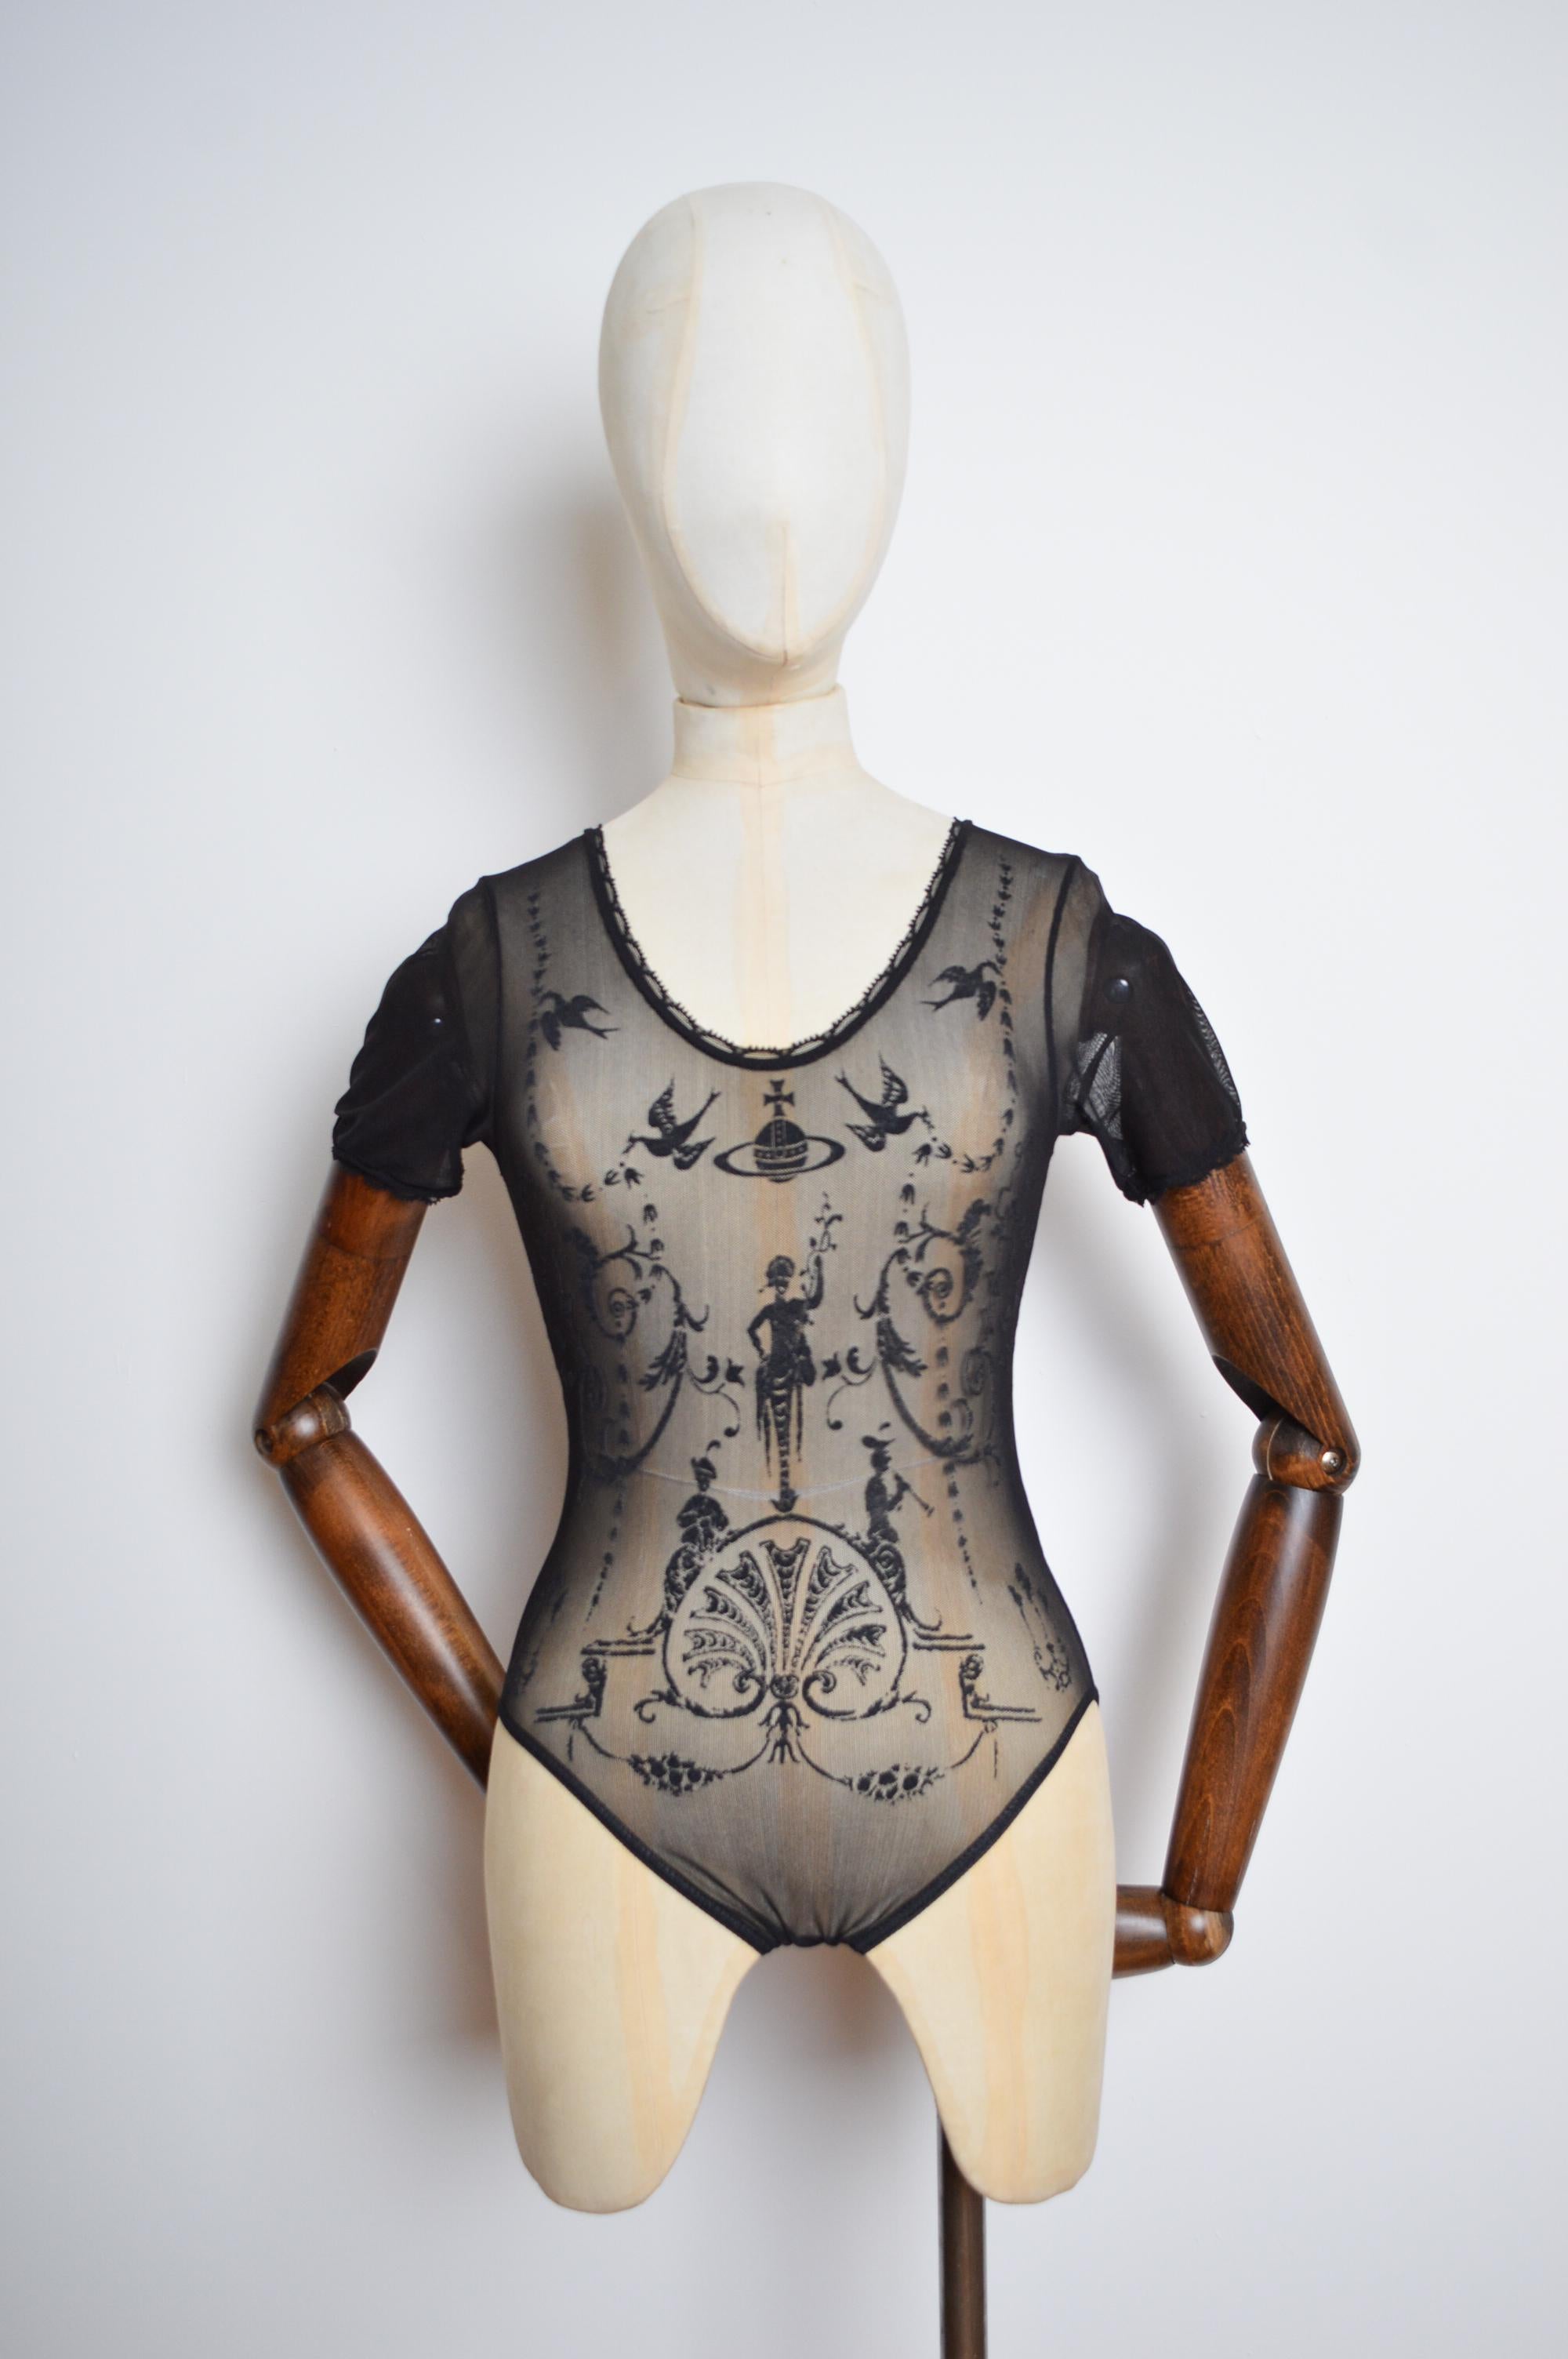 Der ikonische Vivienne Westwood x Sock Shop Bodysuit aus dehnbarem Mesh von 1992.   

Größe XS-S, die Schaufensterpuppe hier ist eine UK 6 und der Body passt perfekt!   

Merkmale:  
Kurze Ärmel  
Rundhalsausschnitt
Gemusterte Front    

Großartiger